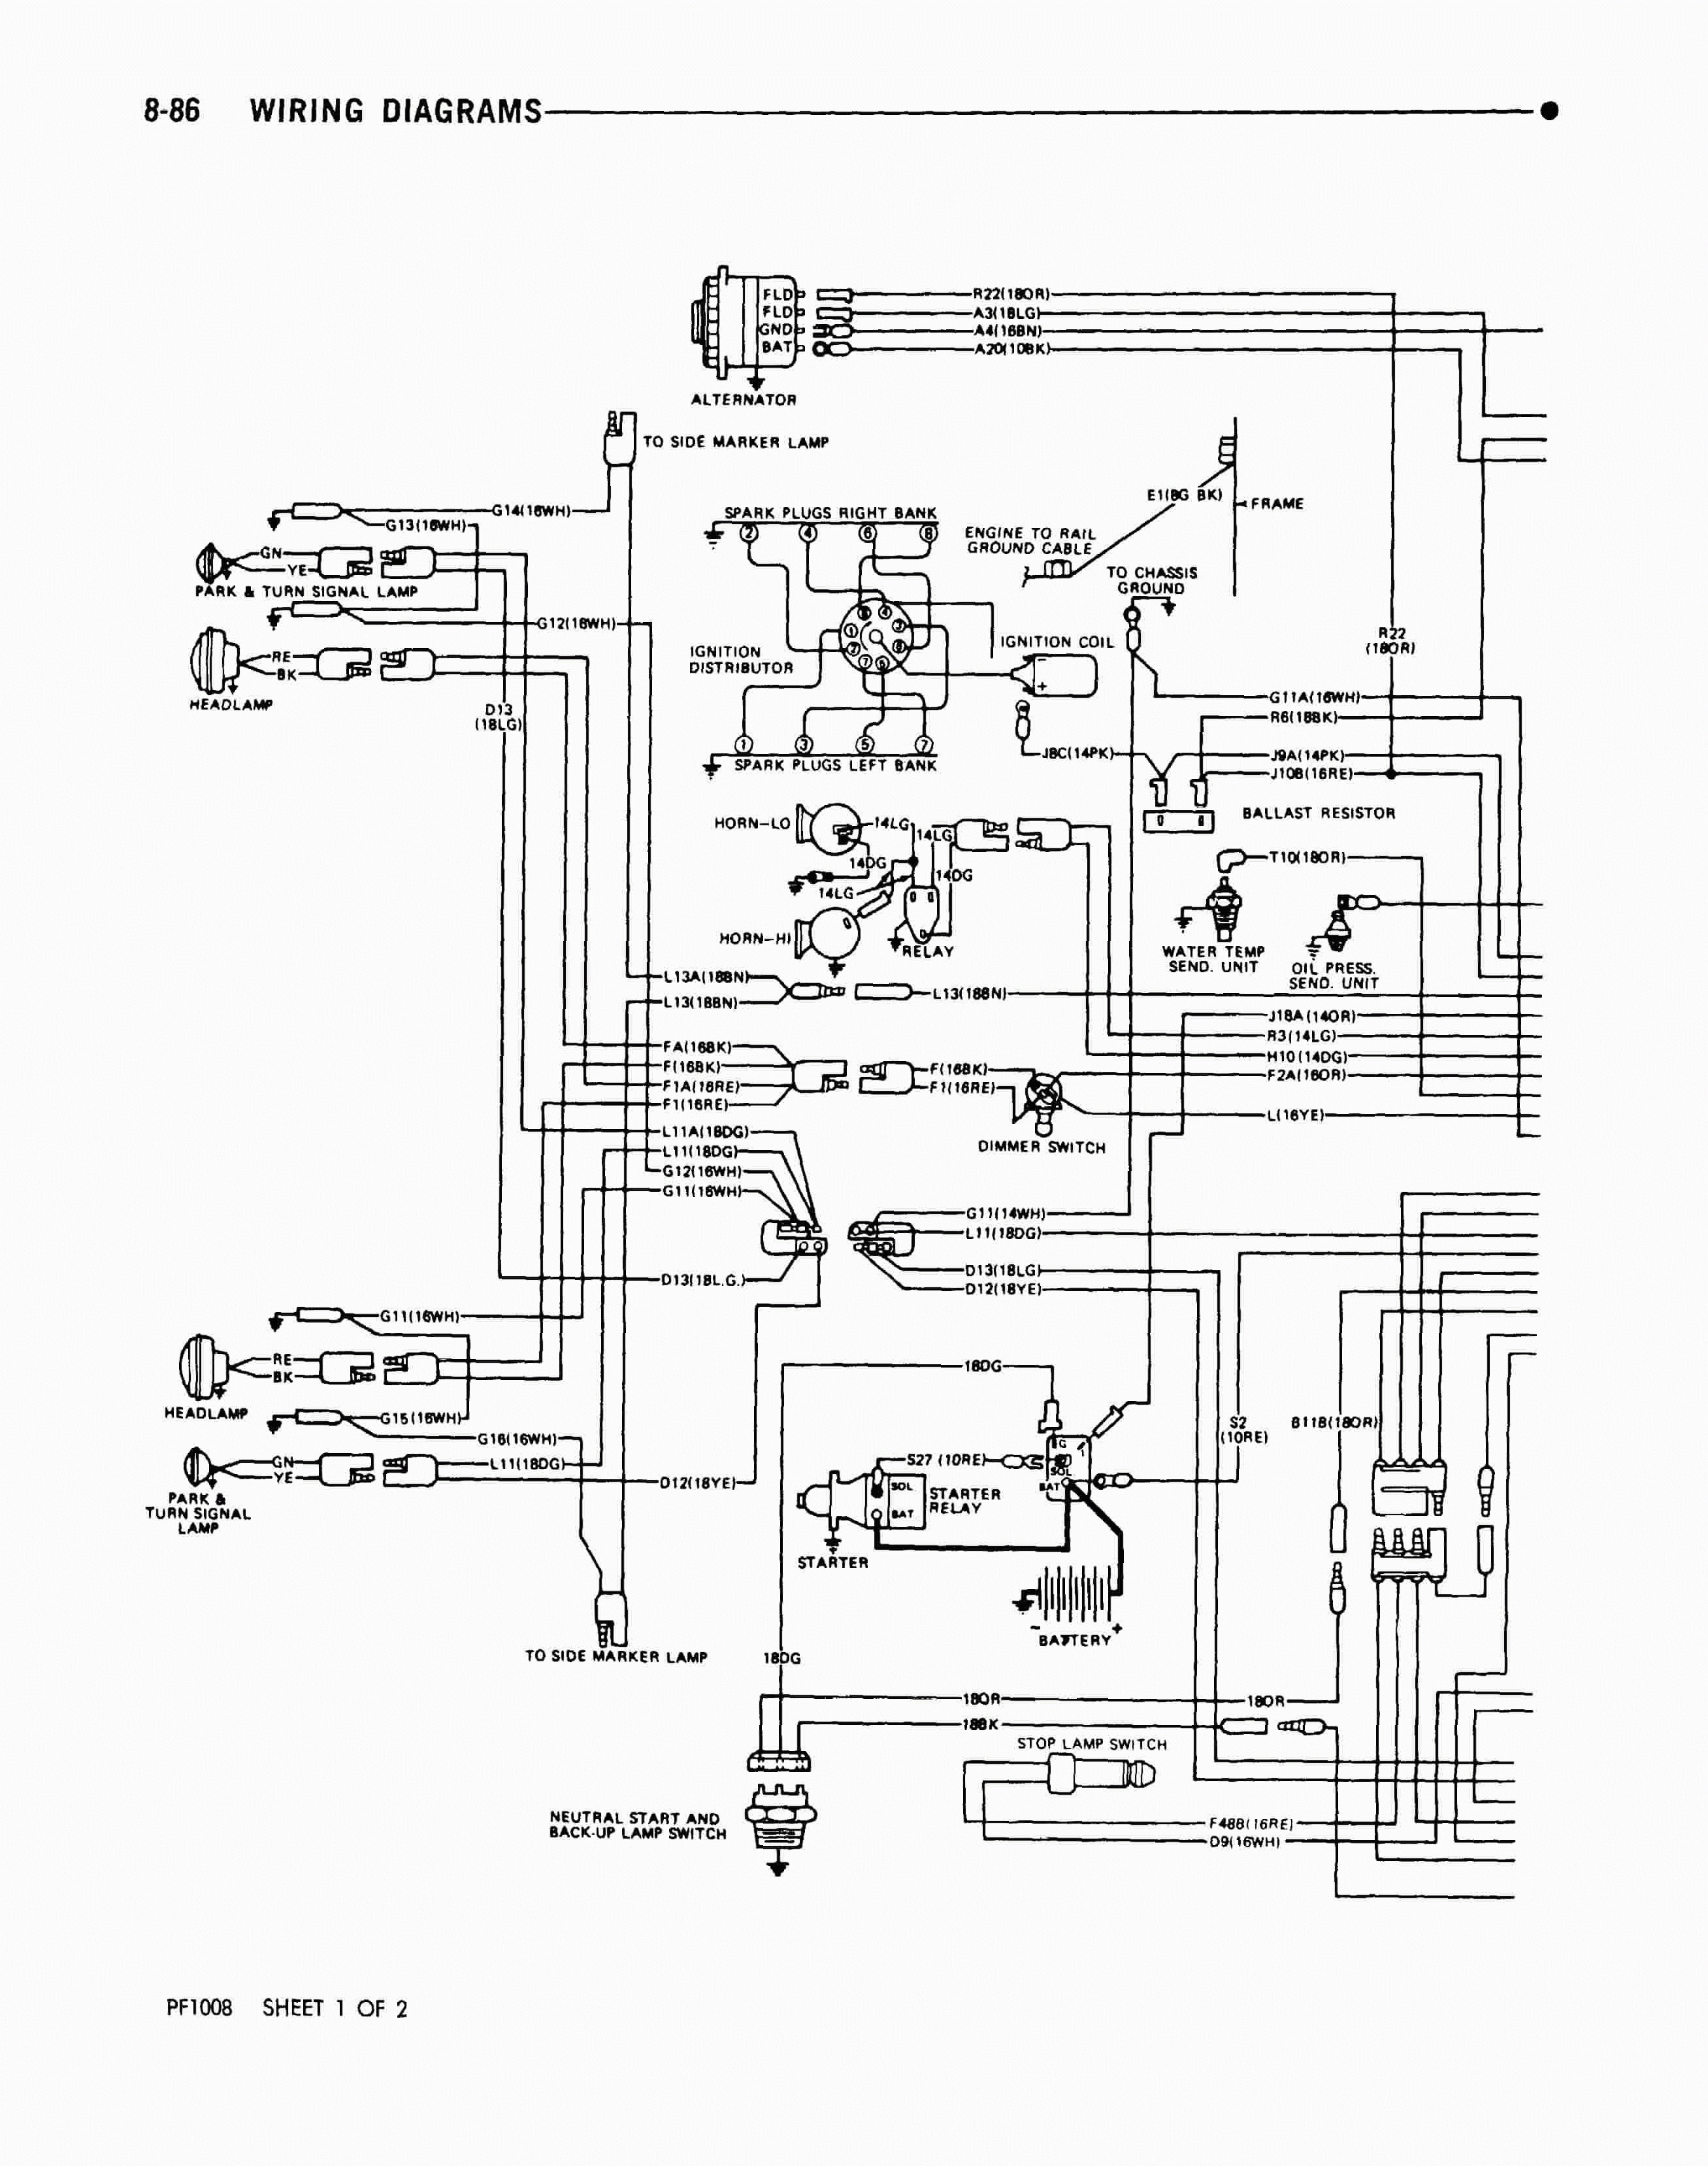 1978 Winnebago Wiring Diagram Schematic | Wiring Diagram - Winnebago Motorhome Wiring Diagram